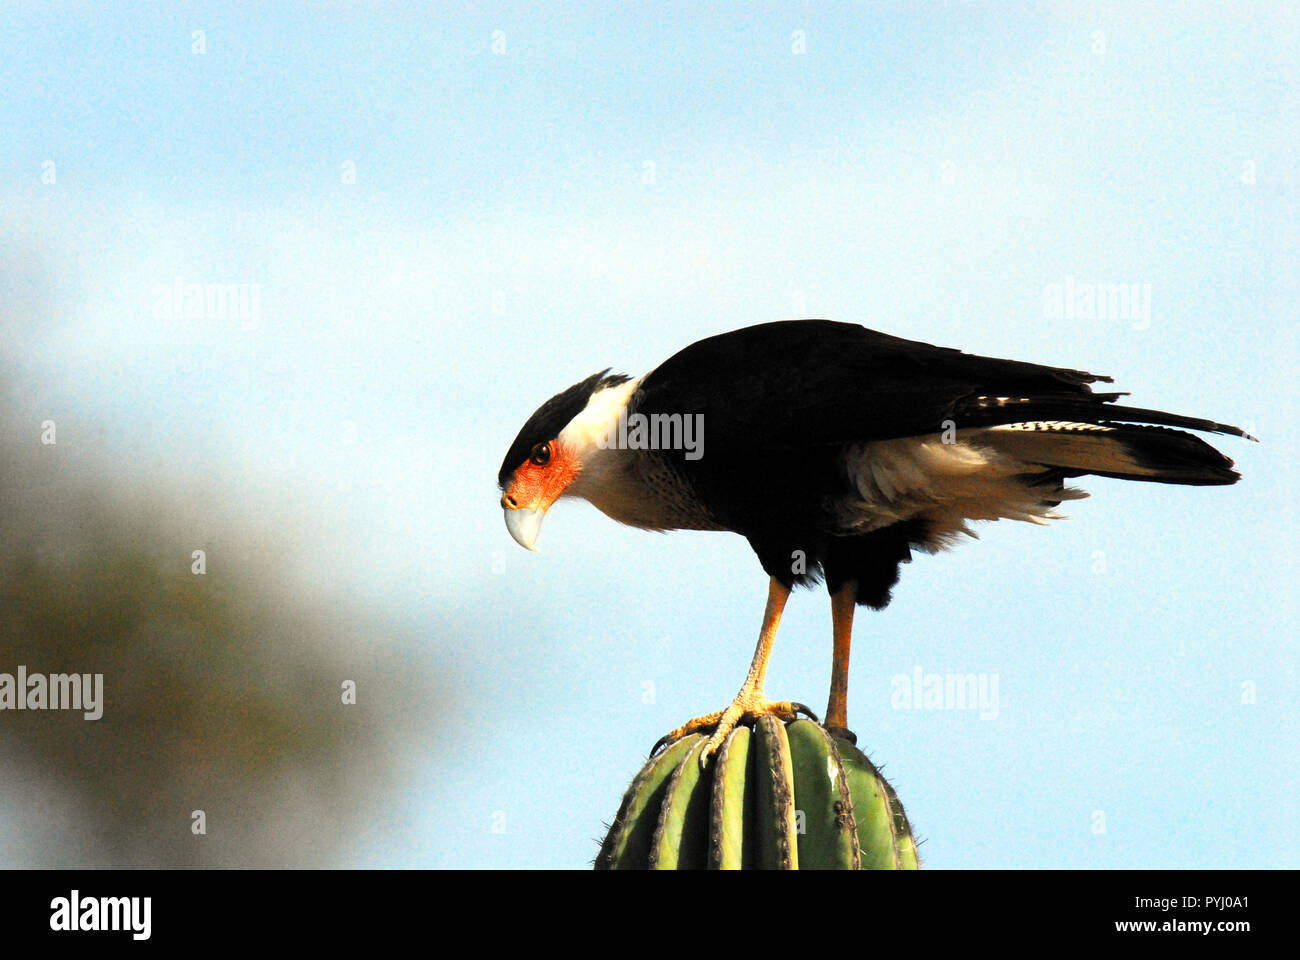 Eine Nahaufnahme von einem wunderschönen schwarzen Karakara (Caracarinae) Falcon sich auf einem Kaktus in BaJa, Mexico. Stockfoto